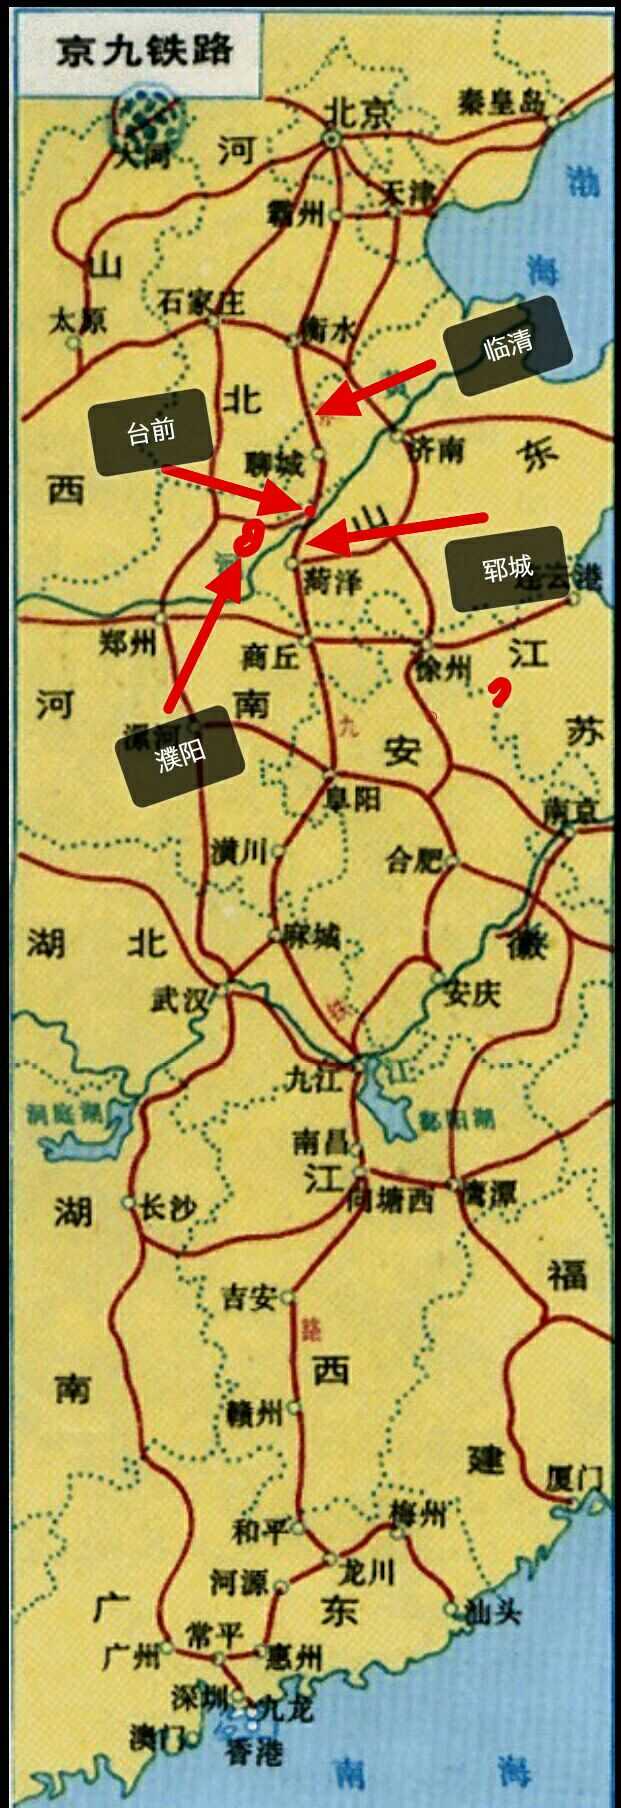 那不可能,毕竟临菏客专铁总与山东出资,河南没有规划过京九高铁濮阳段